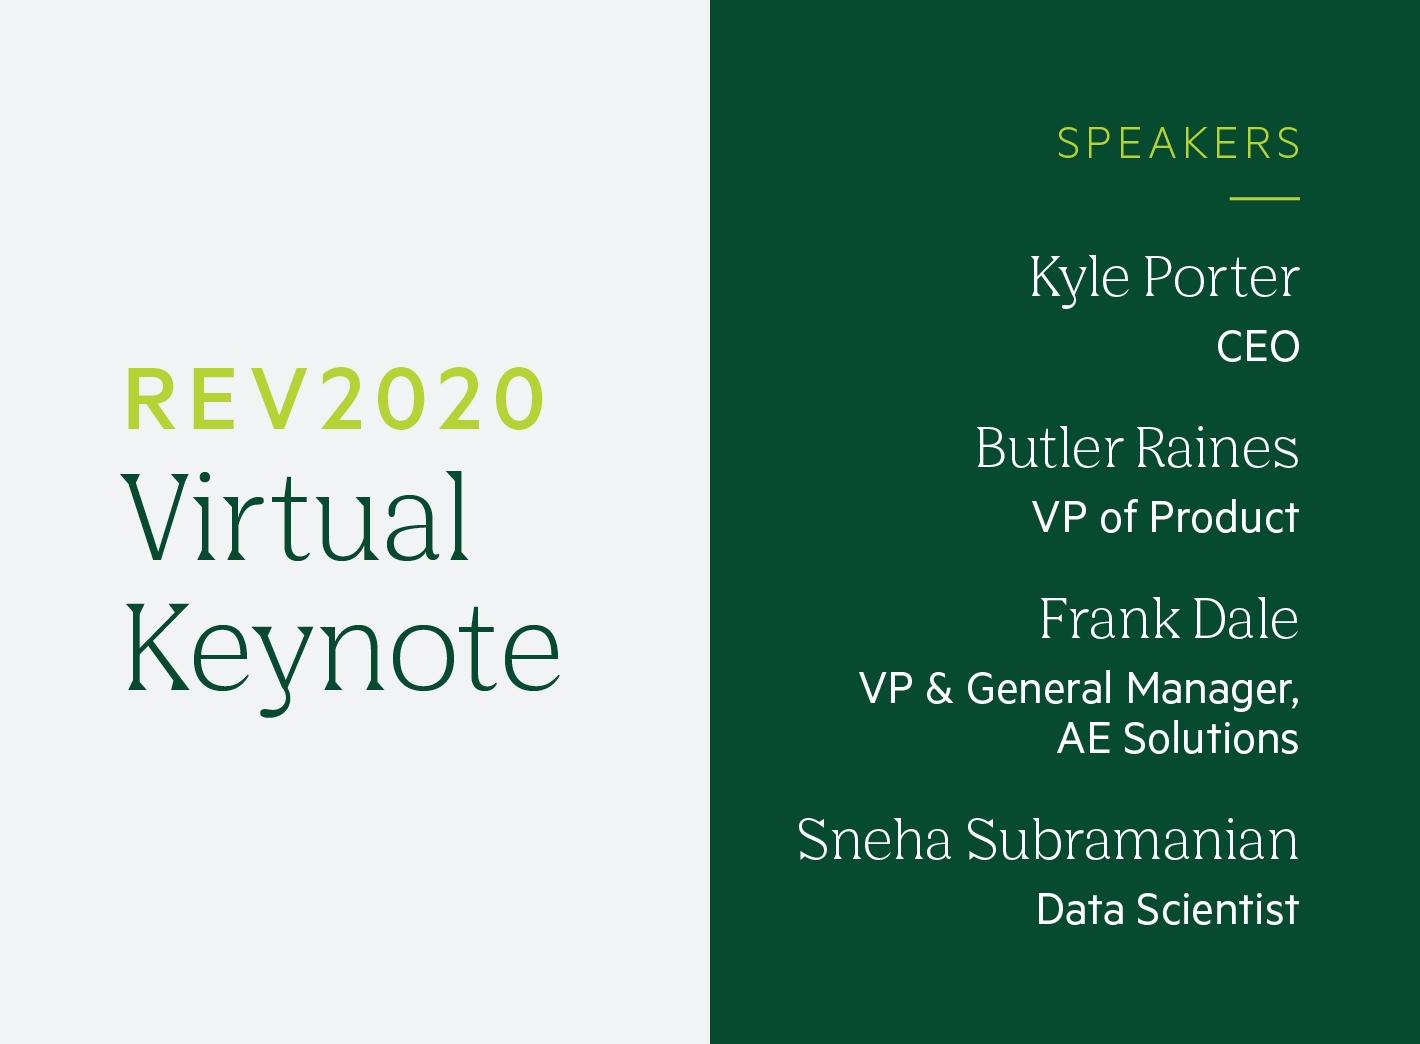 "Rev2020 Virtual Keynote"